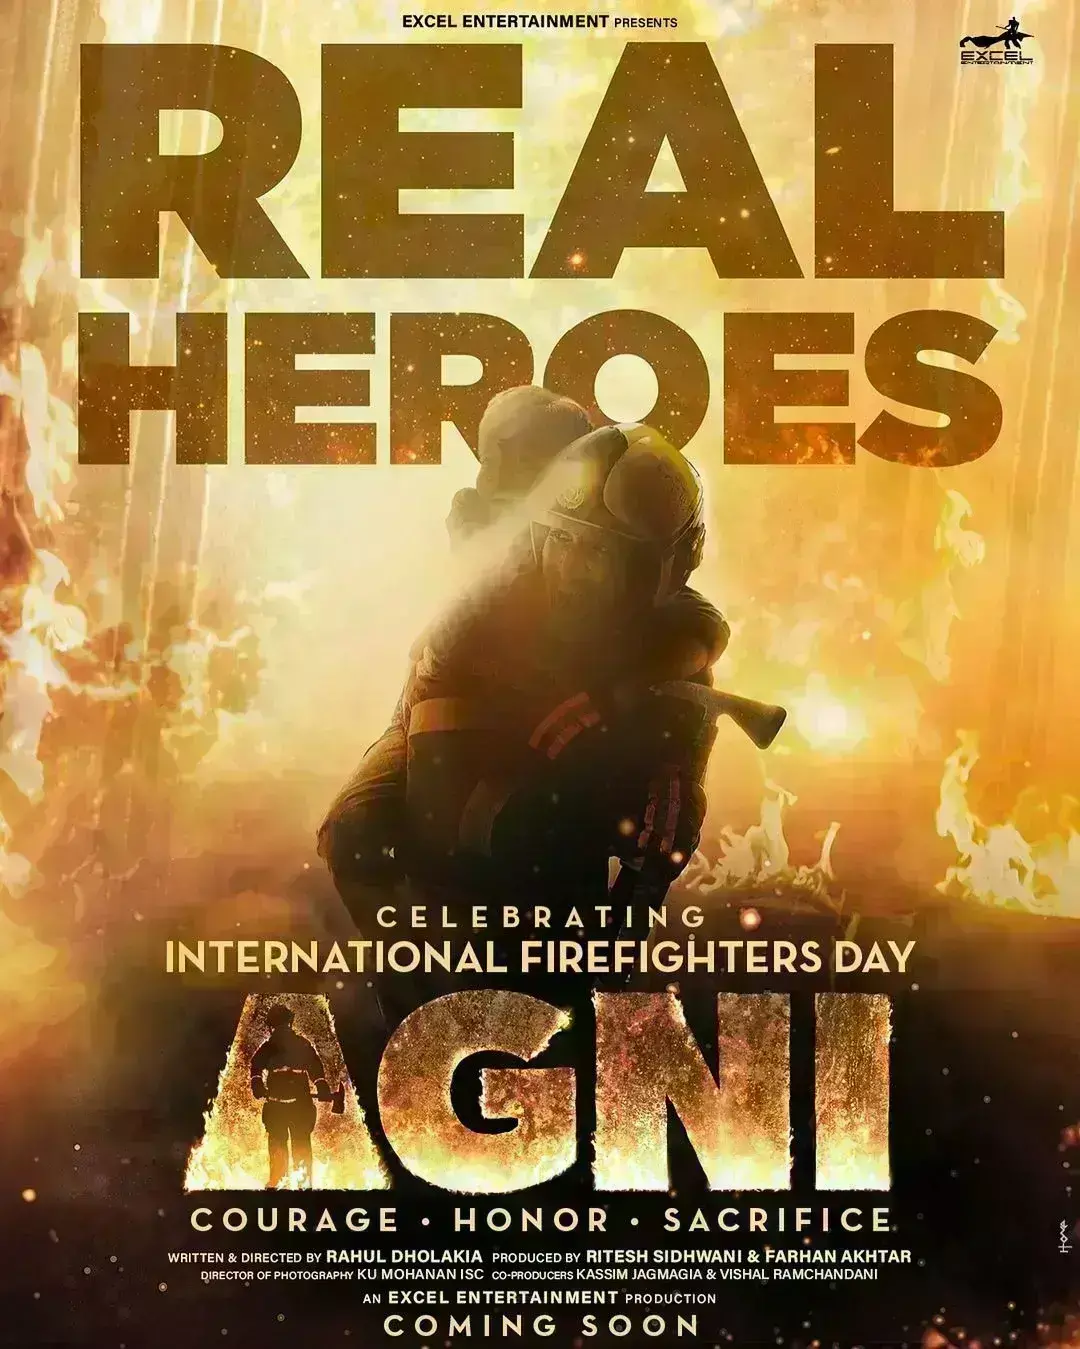 फिल्म अग्नि का फर्स्ट  पोस्टर रिलीज, प्रतीक-दिव्येंदु की जोड़ी धमाल मचाने को तैयार